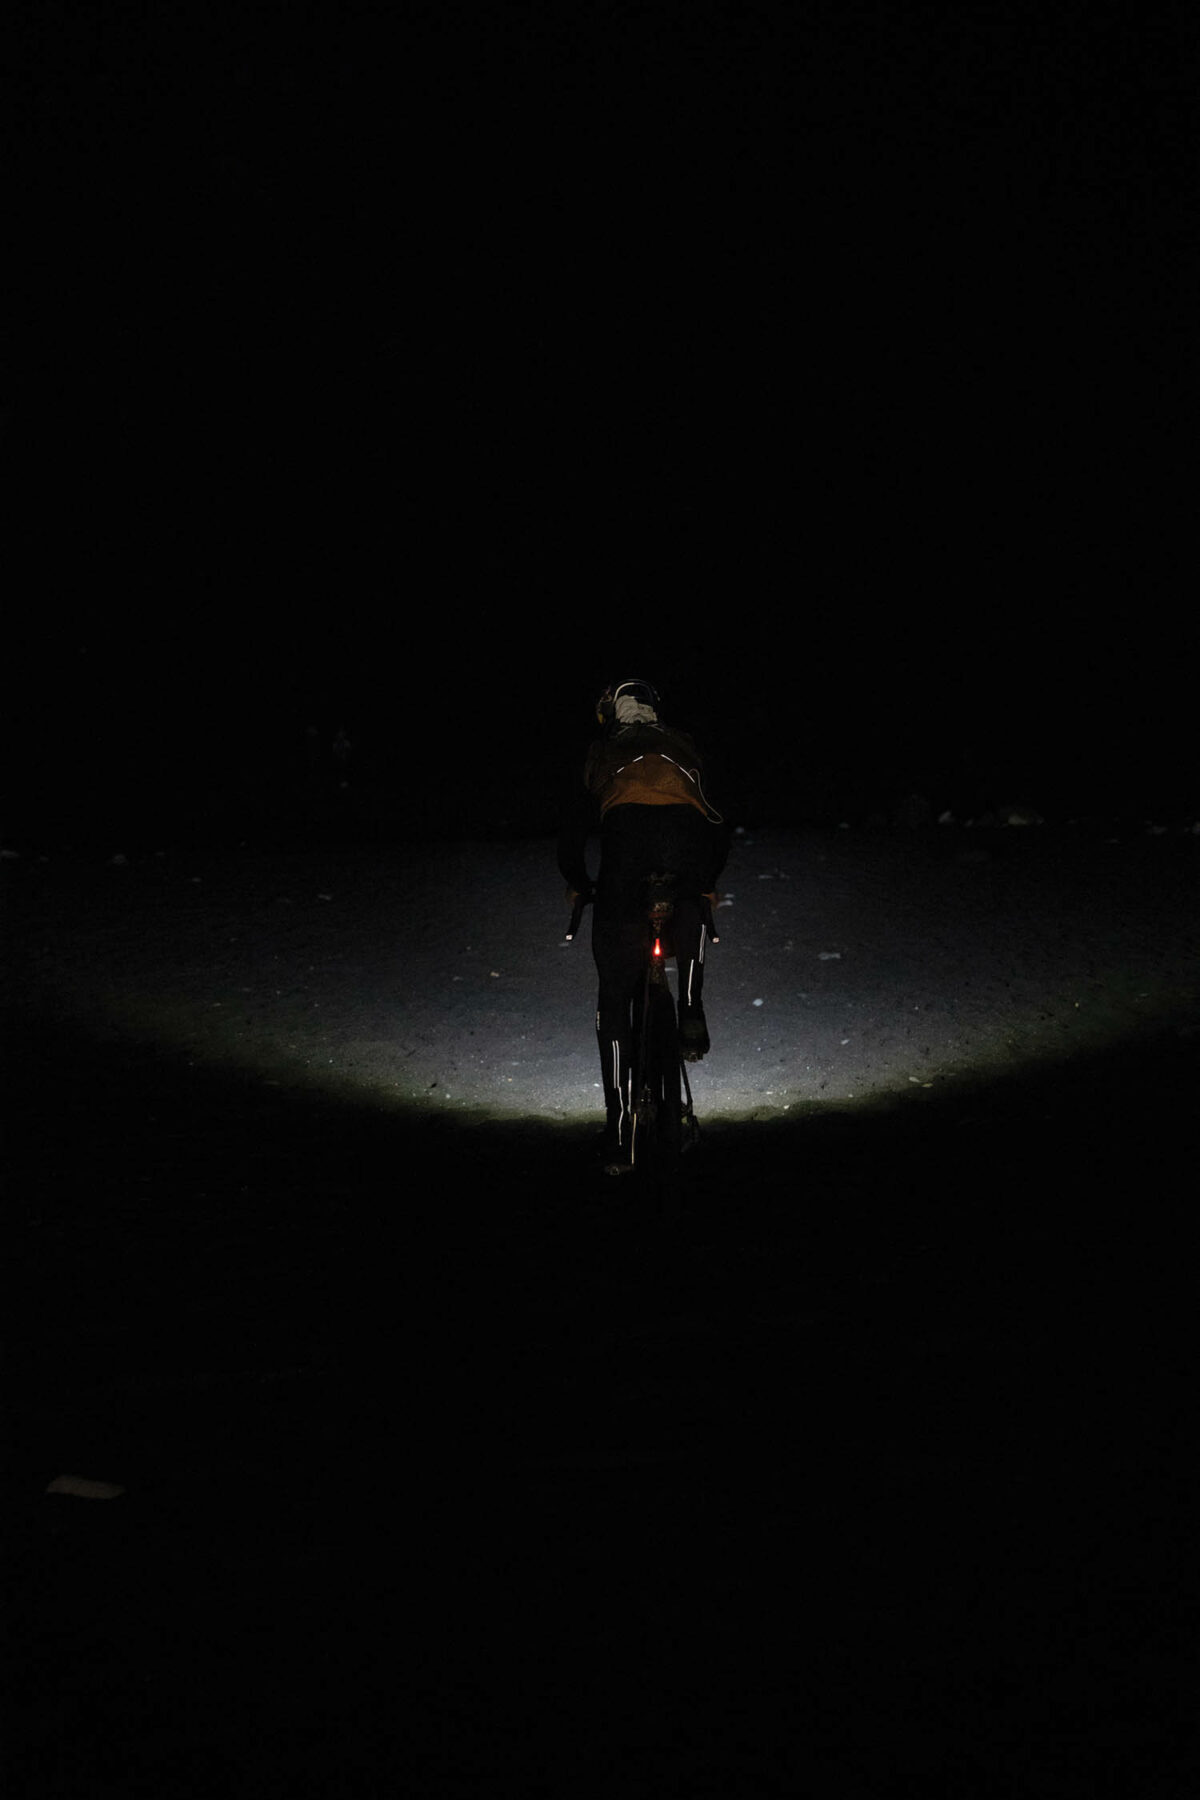 Payson biking in the dark.